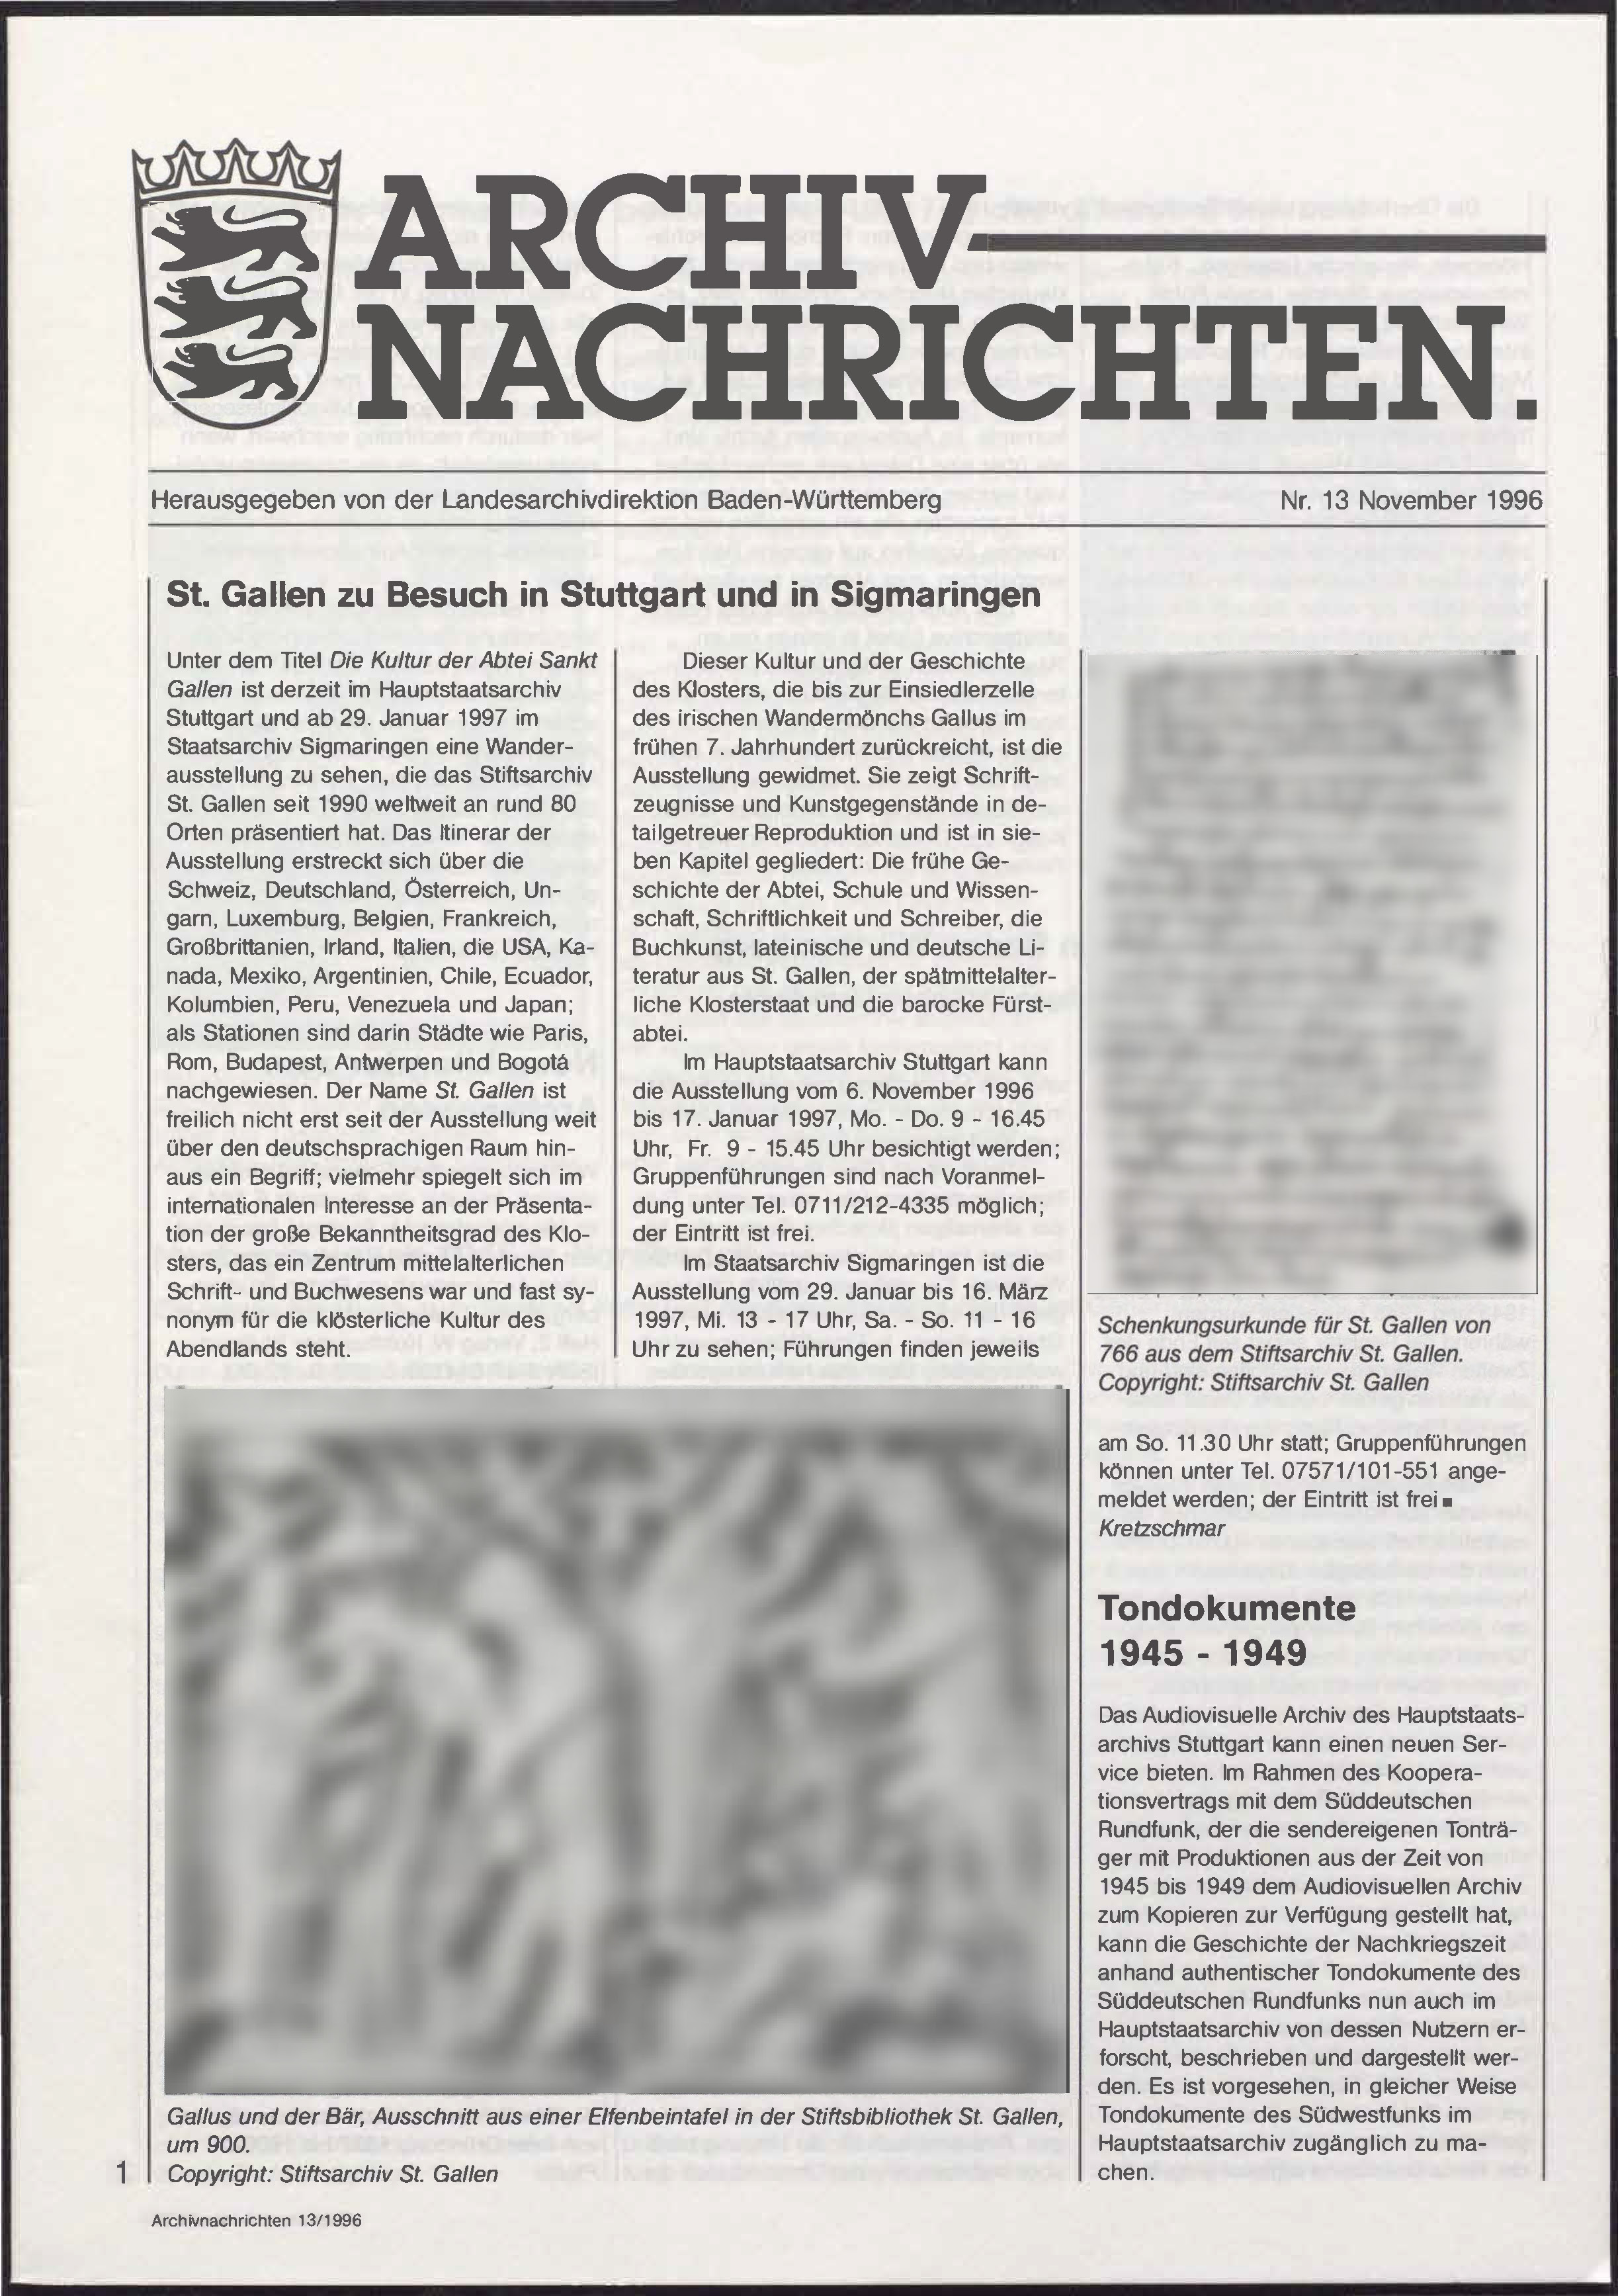                     Ansehen Nr. 13 (1996): Archivnachrichten
                